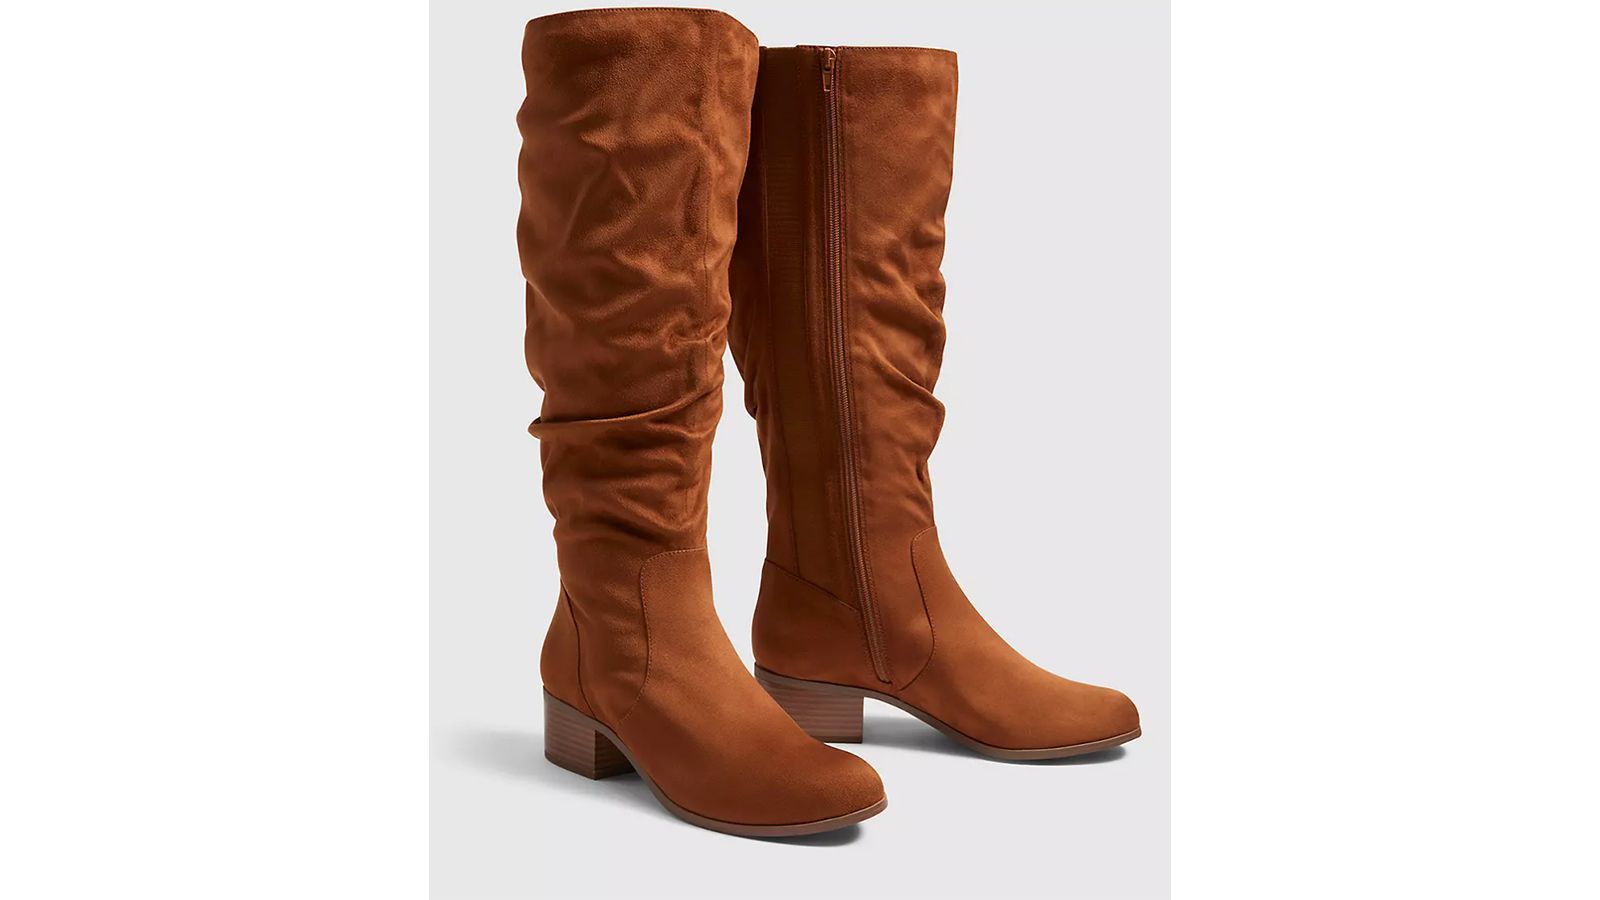 20 Stylish Wide-calf Boots For Women CNN Underscored | annadesignstuff.com